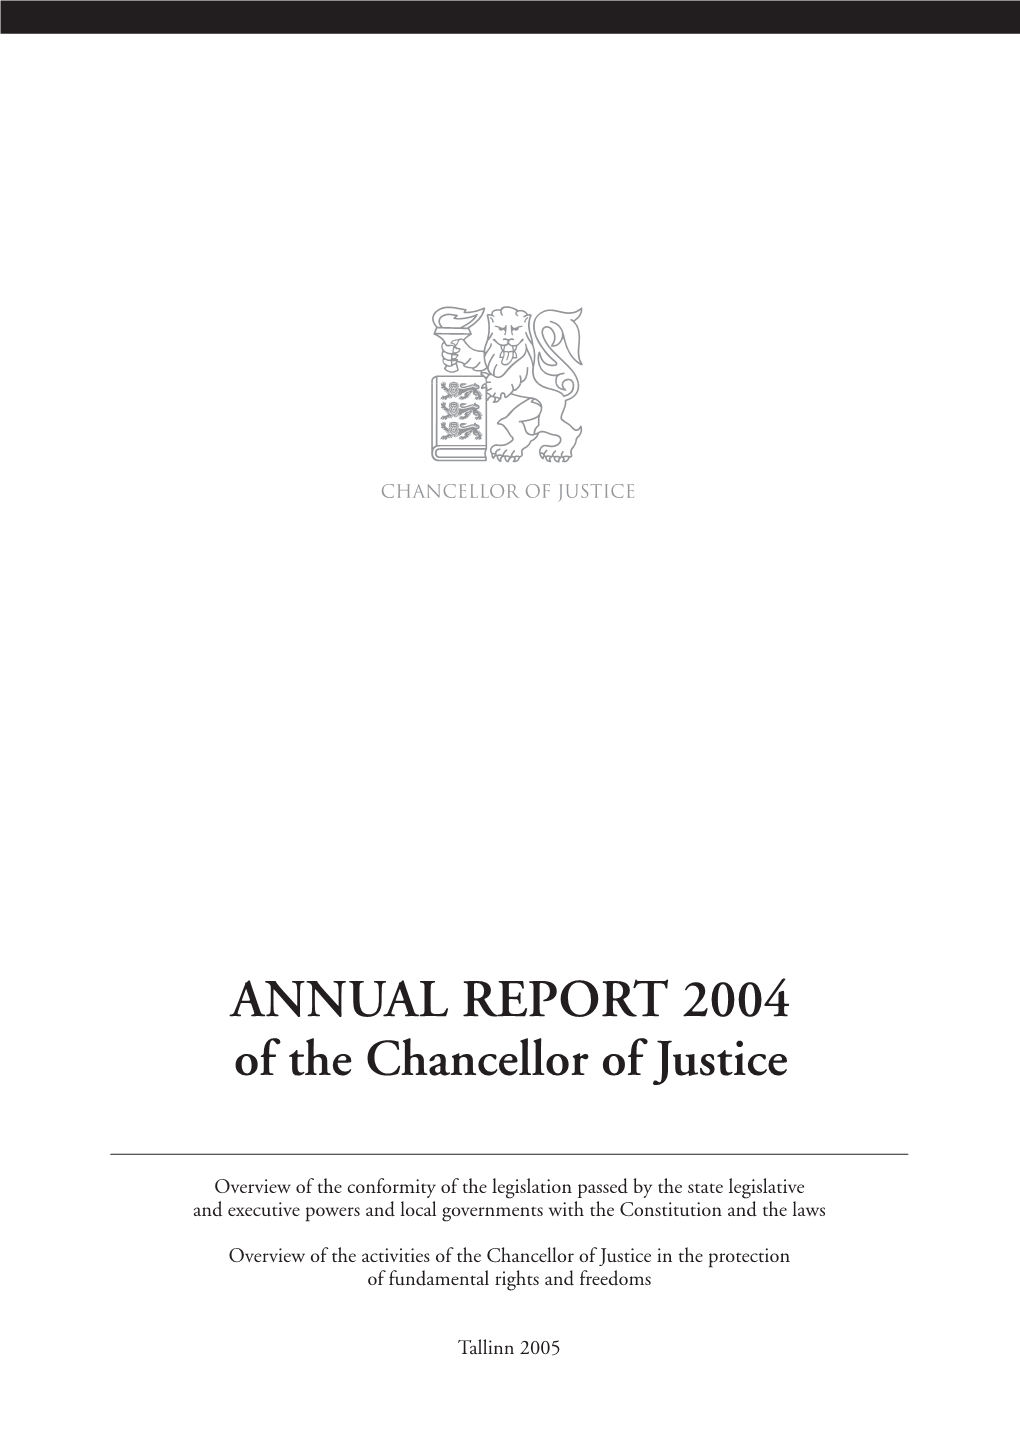 Annual Report of the Chancello